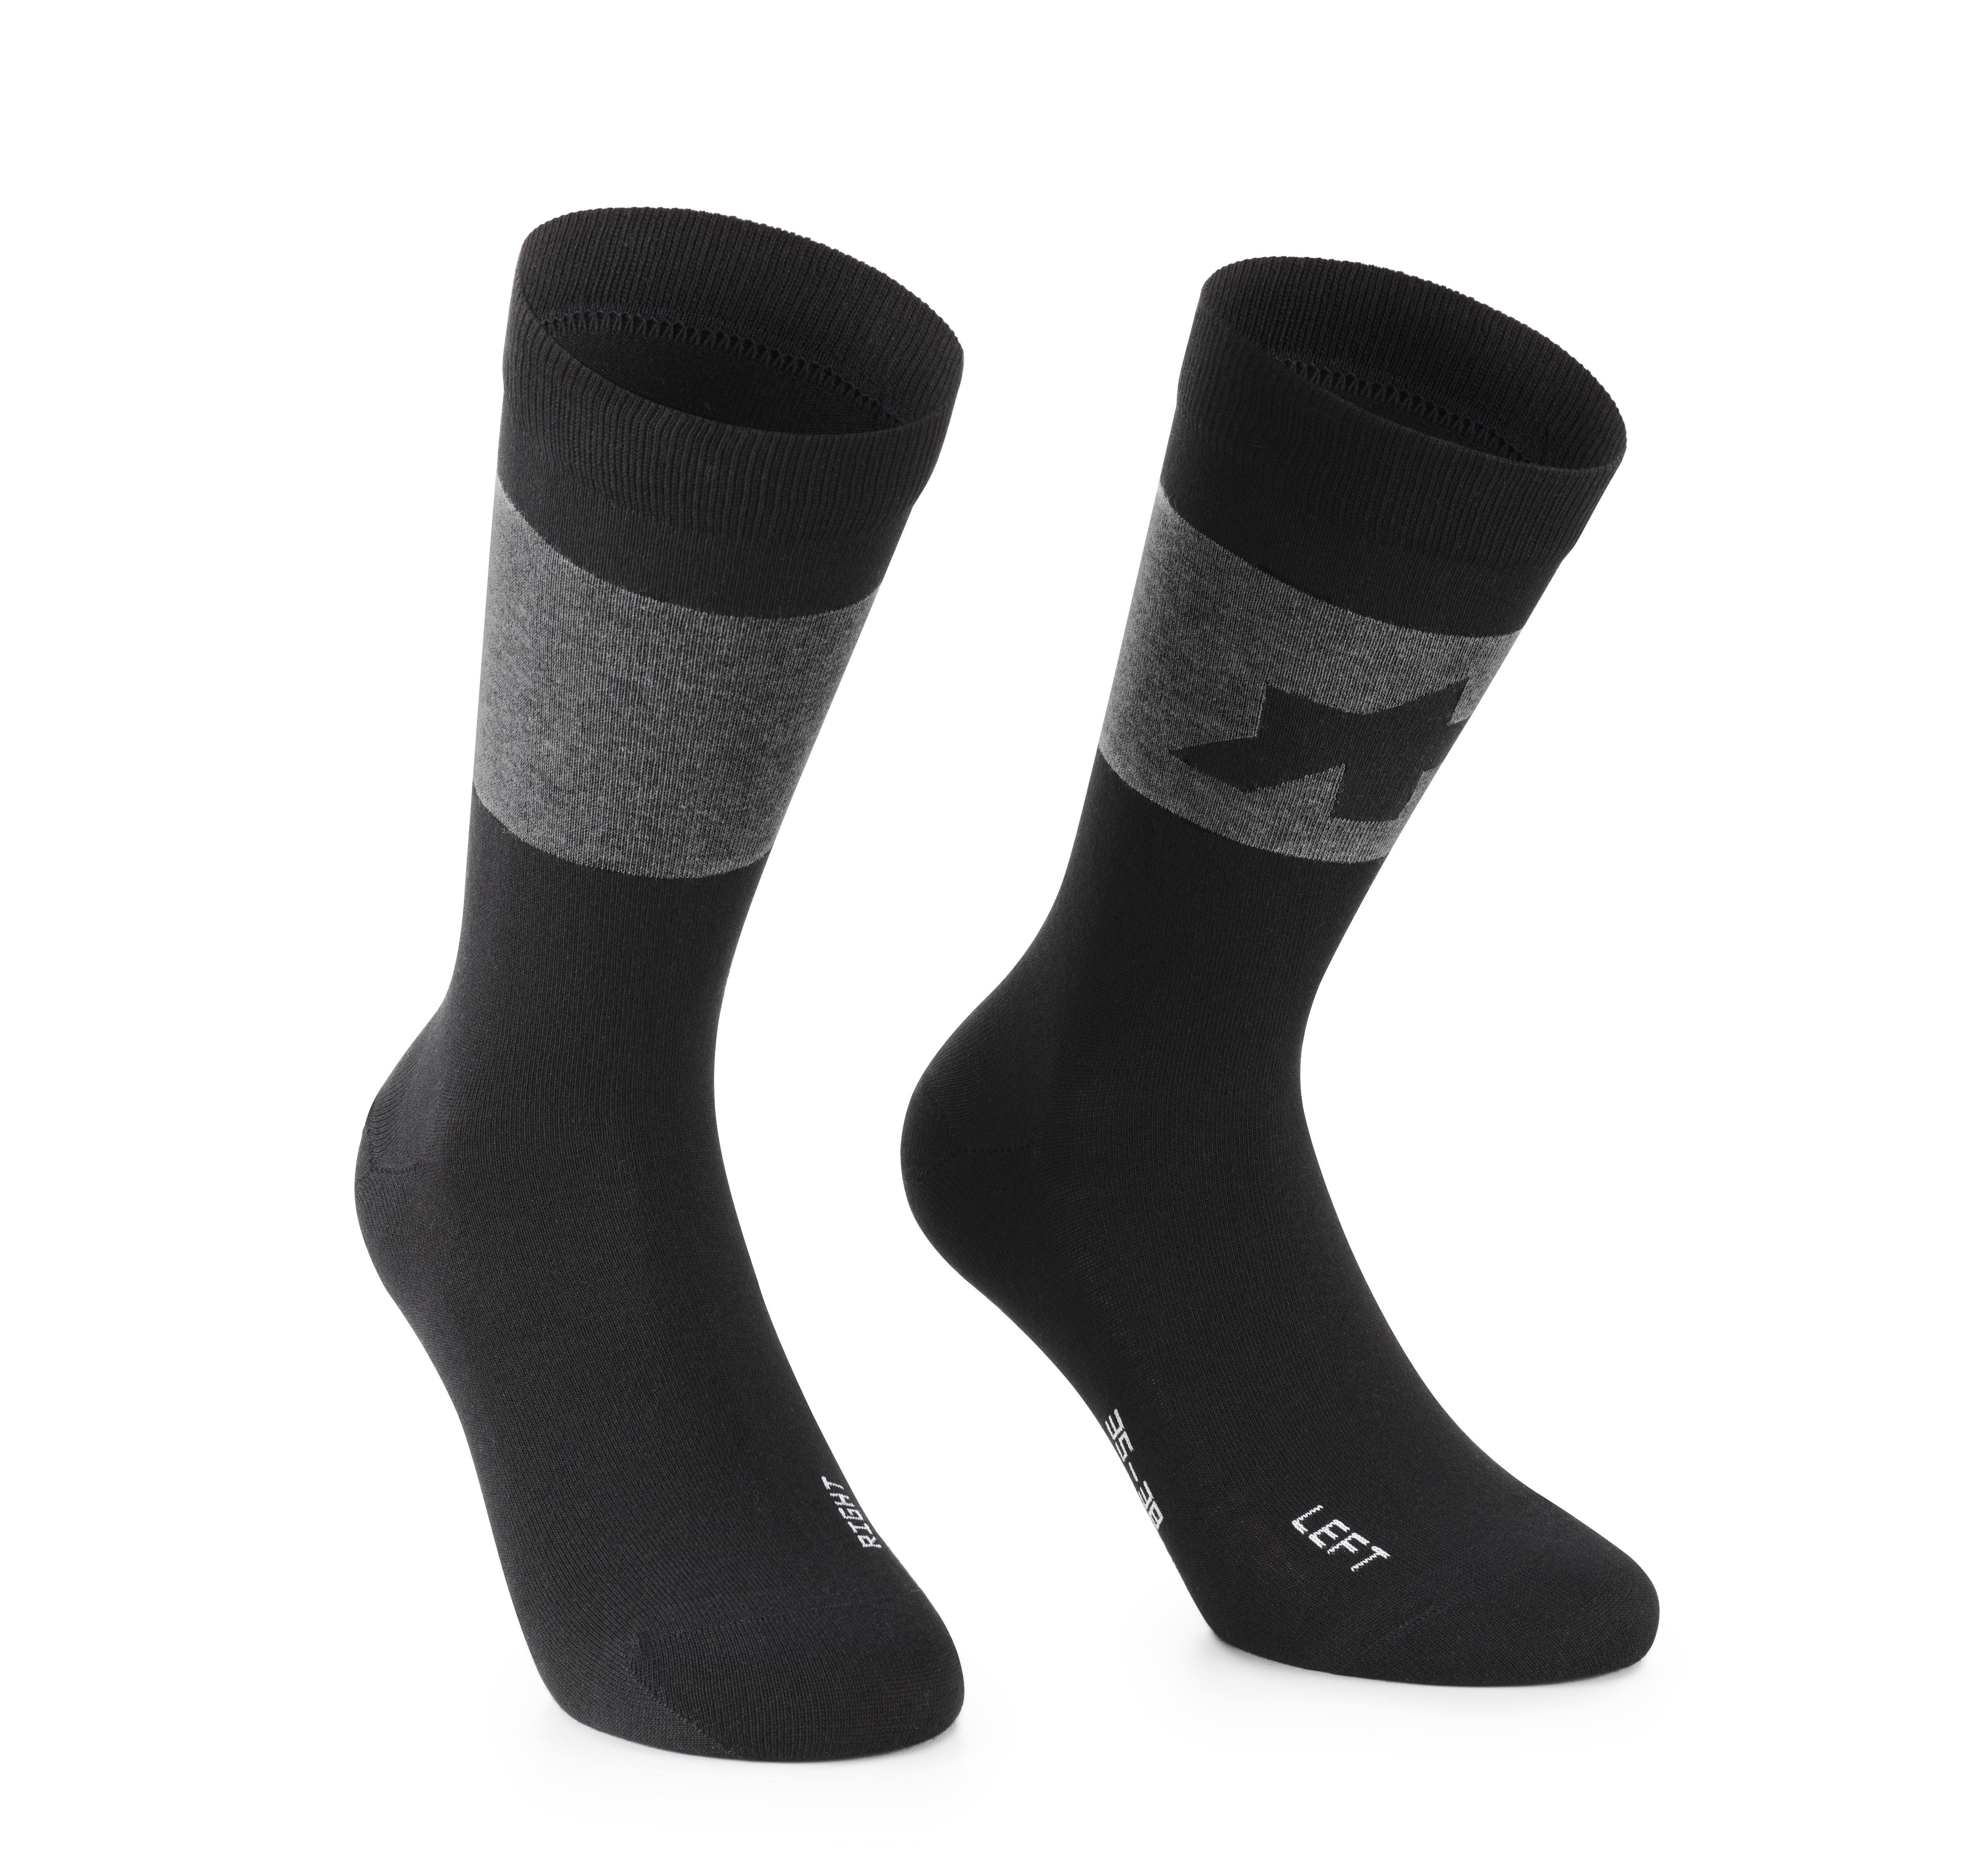 Носки ASSOS Signature Socks Evo, мужские, черные, II/44-47